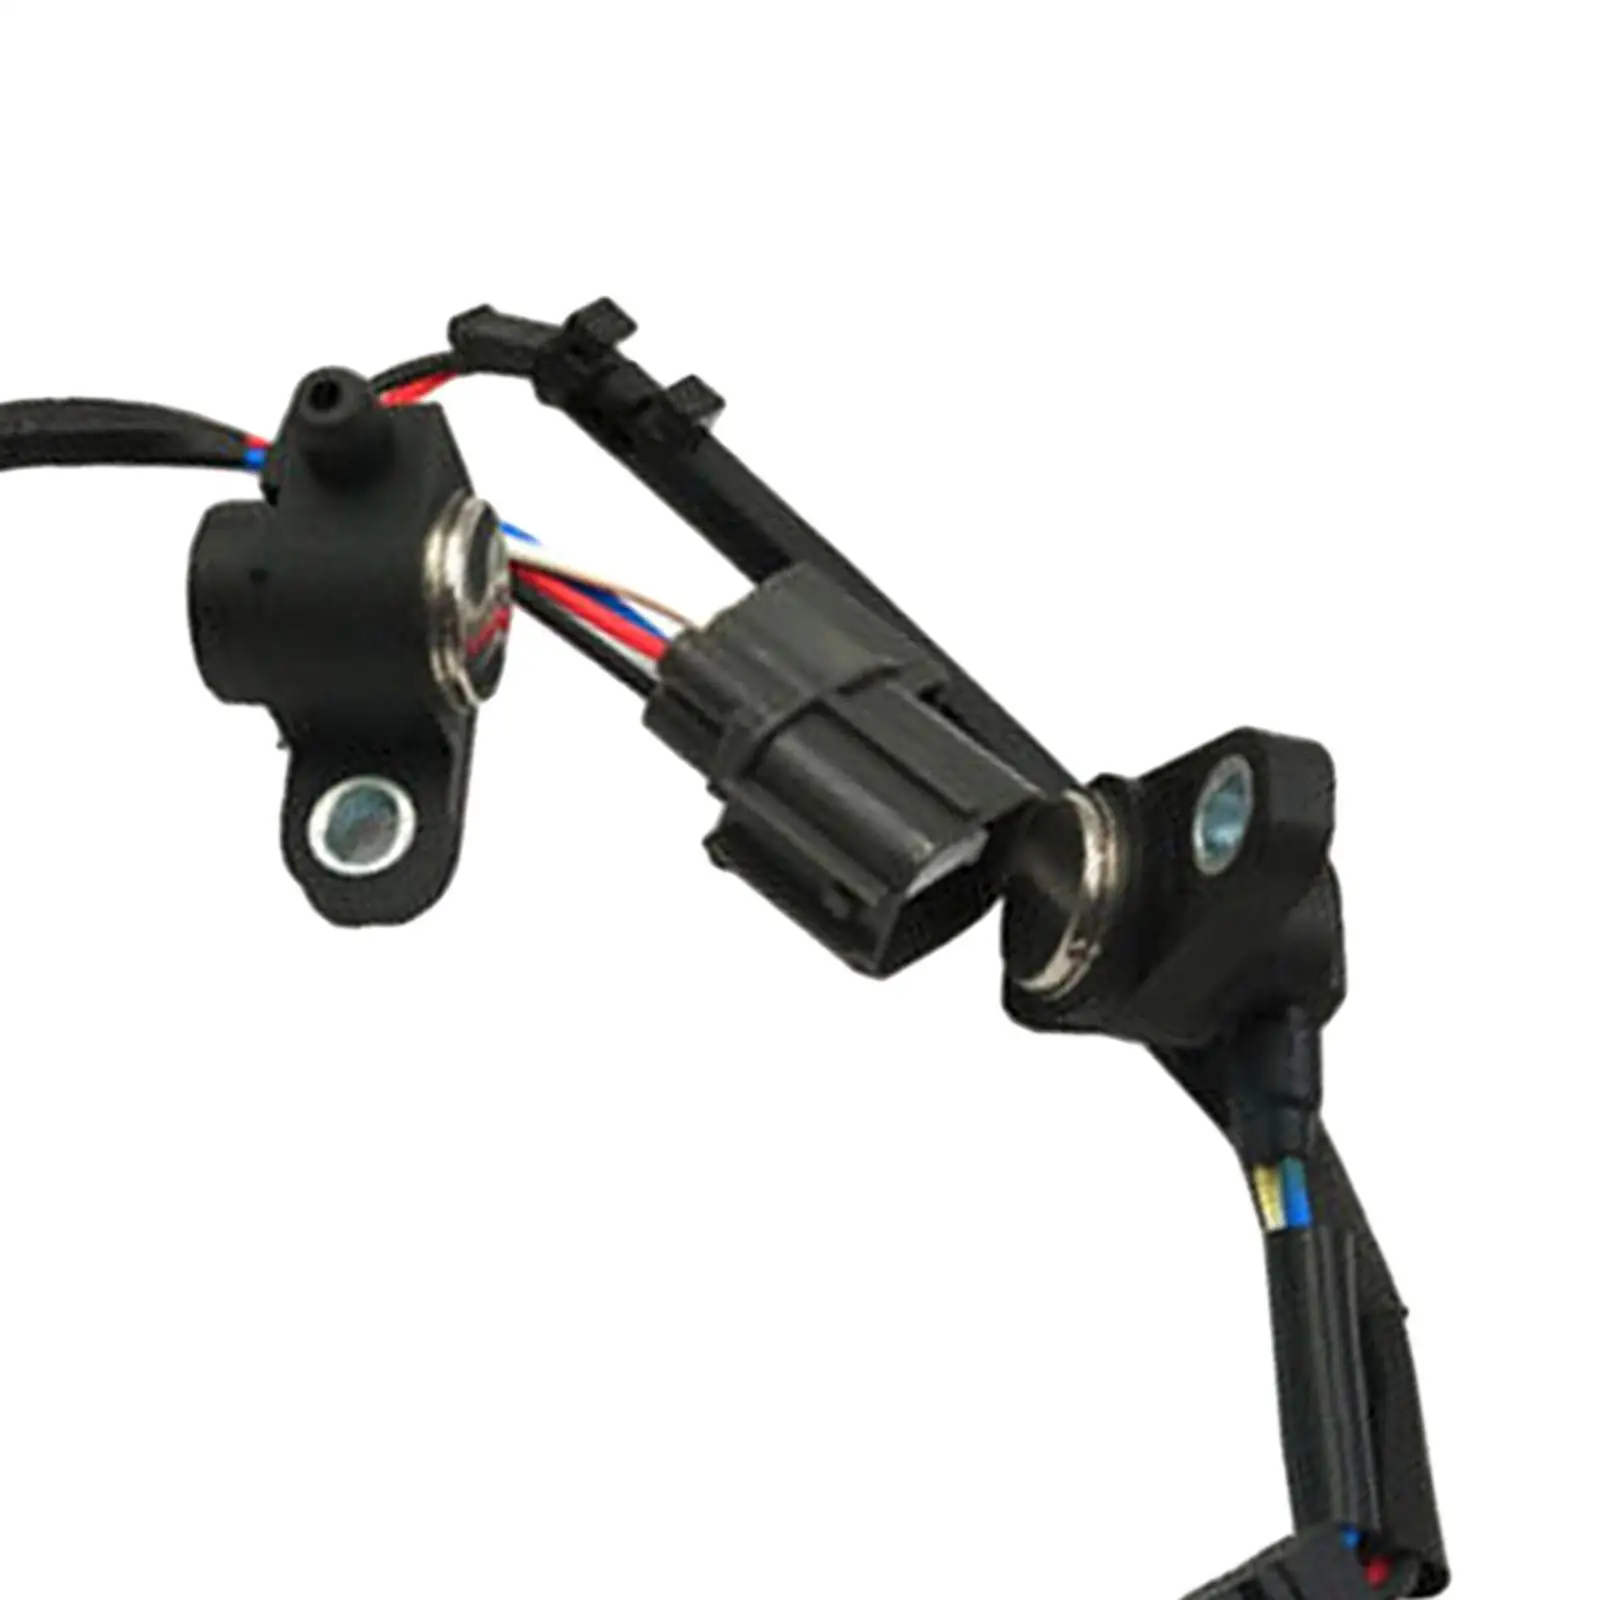 Car Position Sensor 37840-Paa-A00 for Parts Automotive